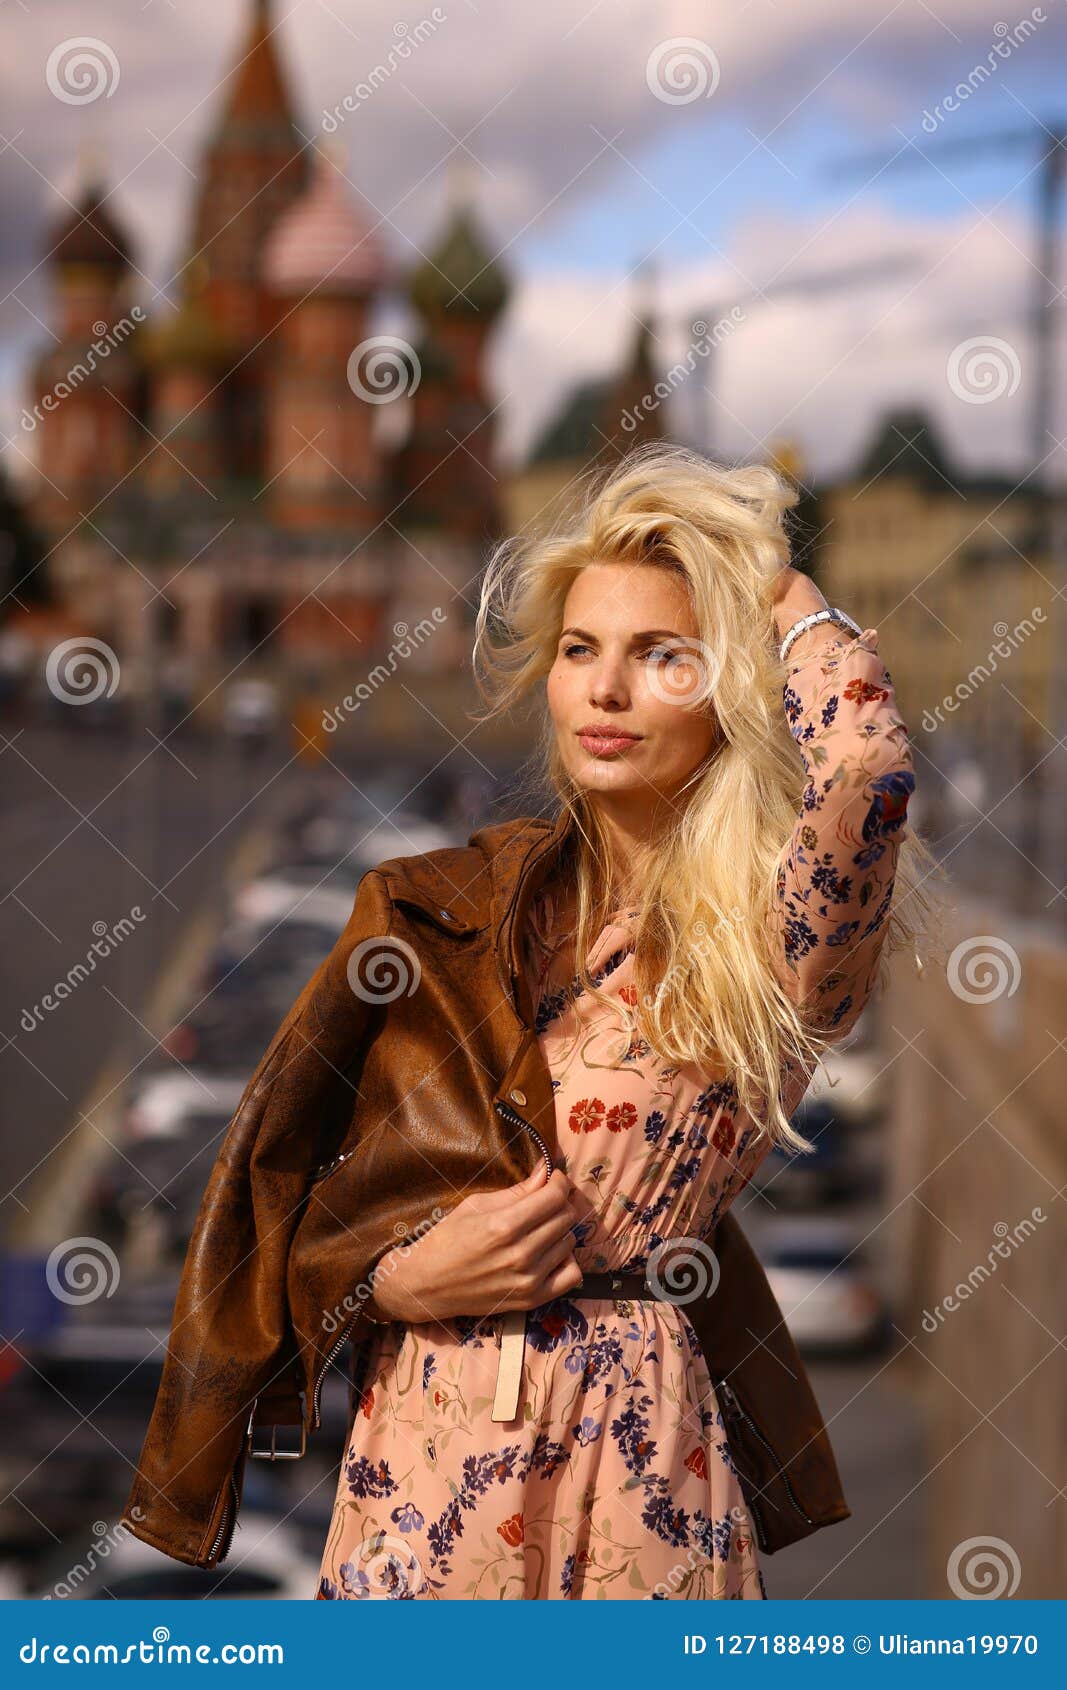 Model Russian Woman